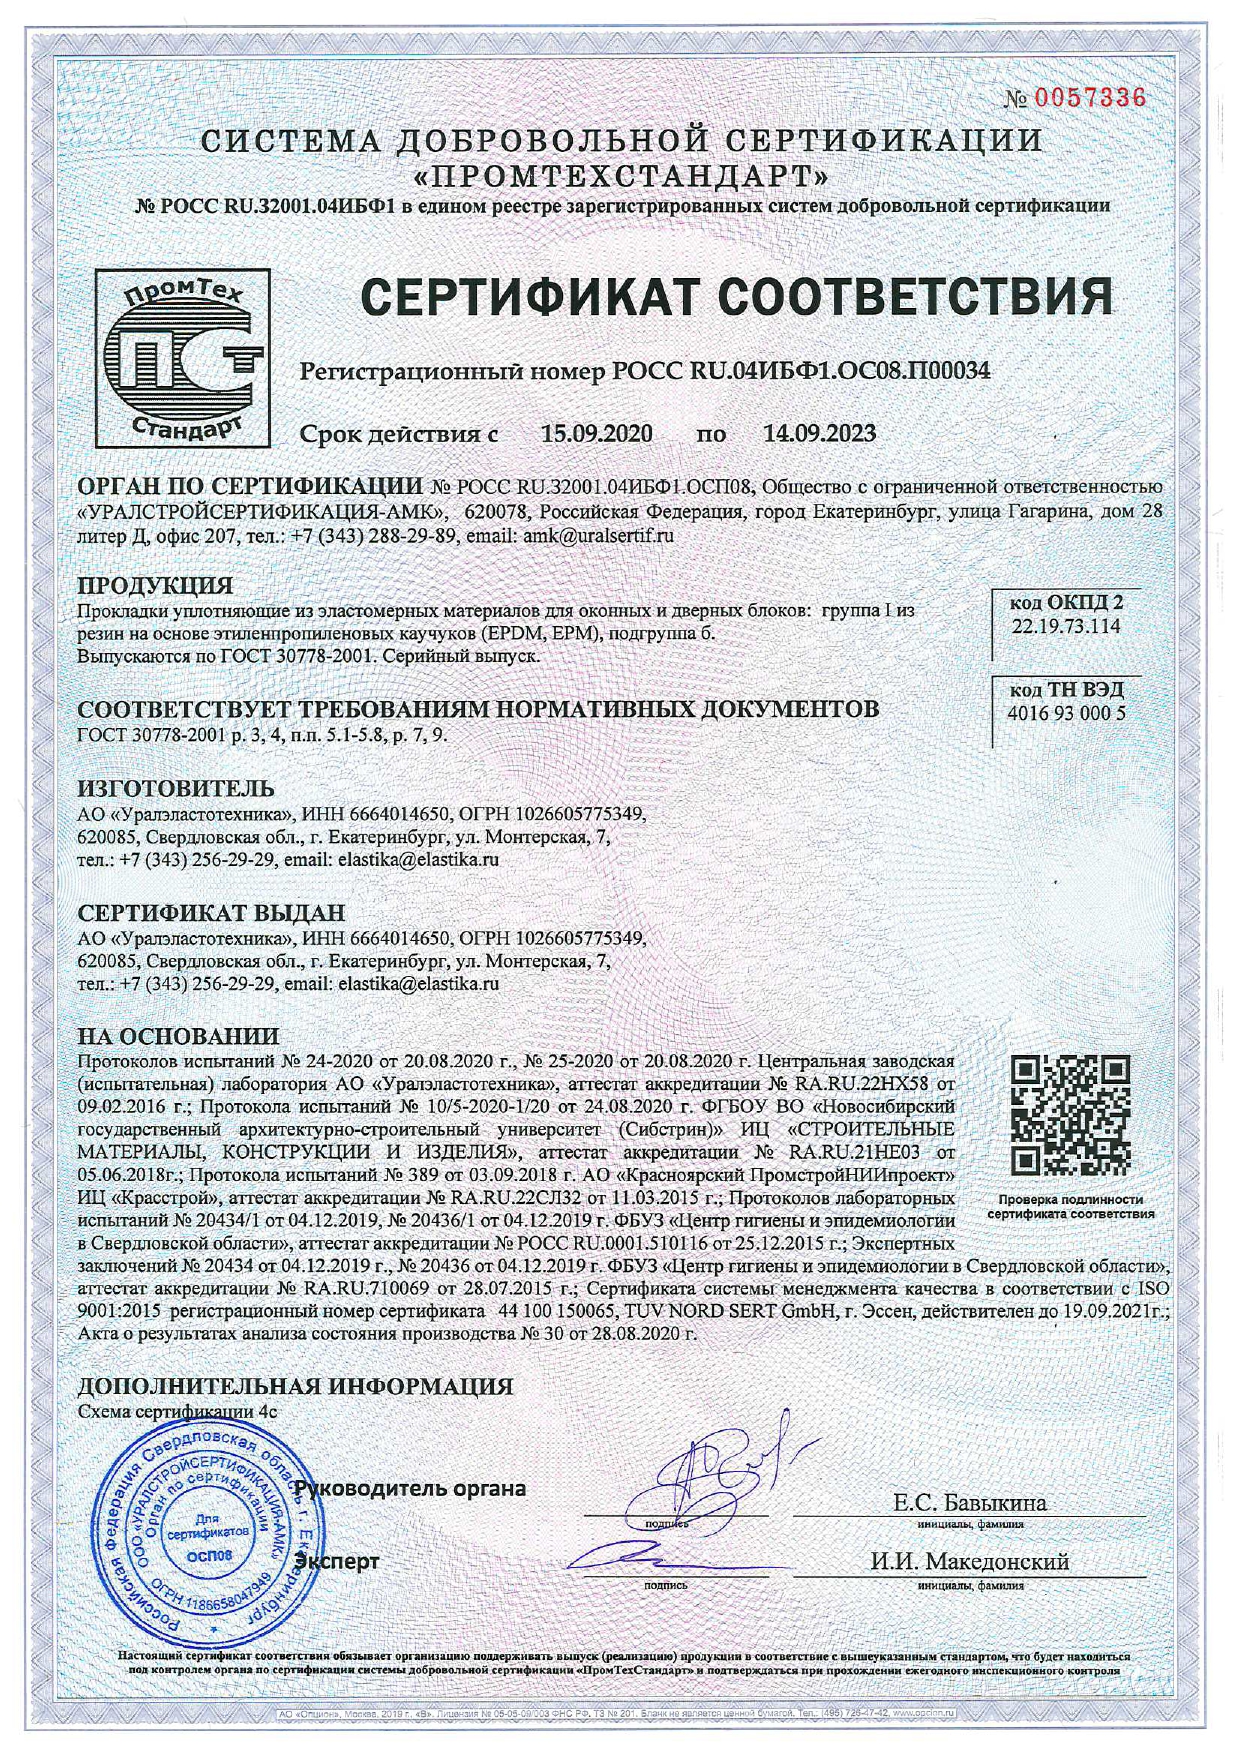 Гост 25129 статус. Сертификат на прокладки уплотняющие из эластомерных материалов. Уплотнитель ГОСТ 30778-2001 сертификат соответствия на продукцию. Импрегнированный брус сертификат. Сертификат грунтовка ГФ-021 ГОСТ 25129-82 серая.